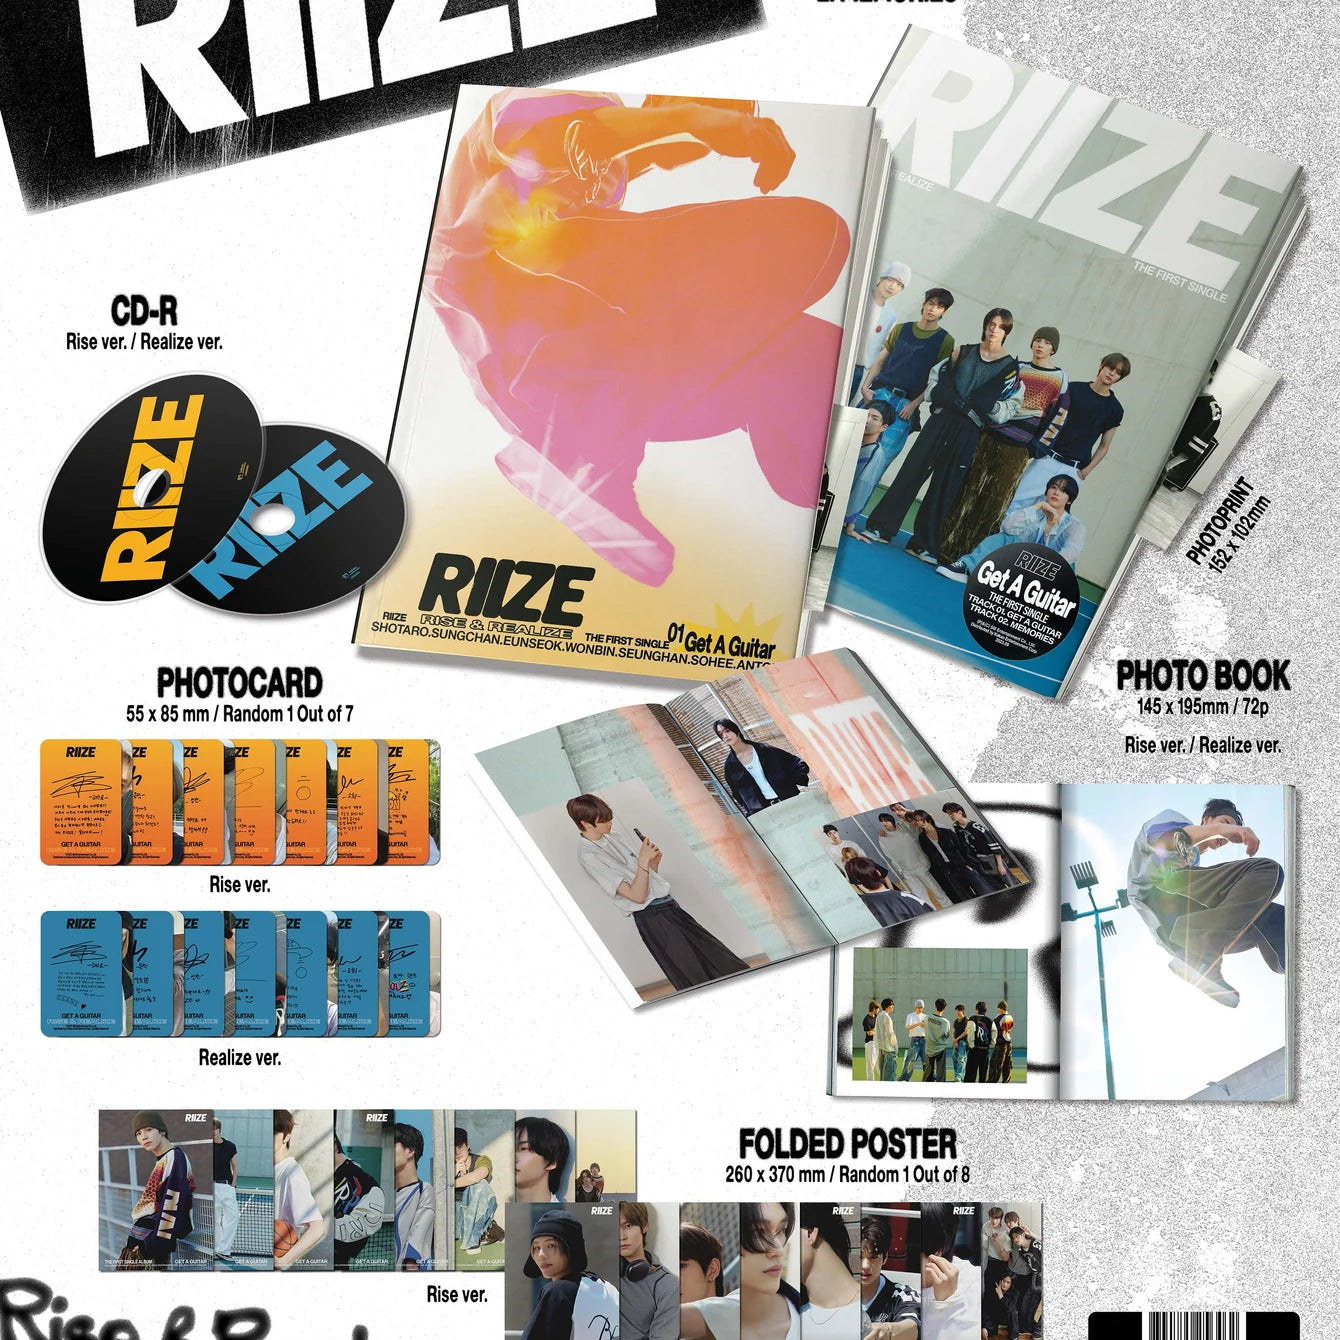 RIIZE_The_1st_Single_Album_album_spec_FINAL_1340x1701_crop_center_6959d93f-2014-4fb0-9a26-bc83e3d60297.webp